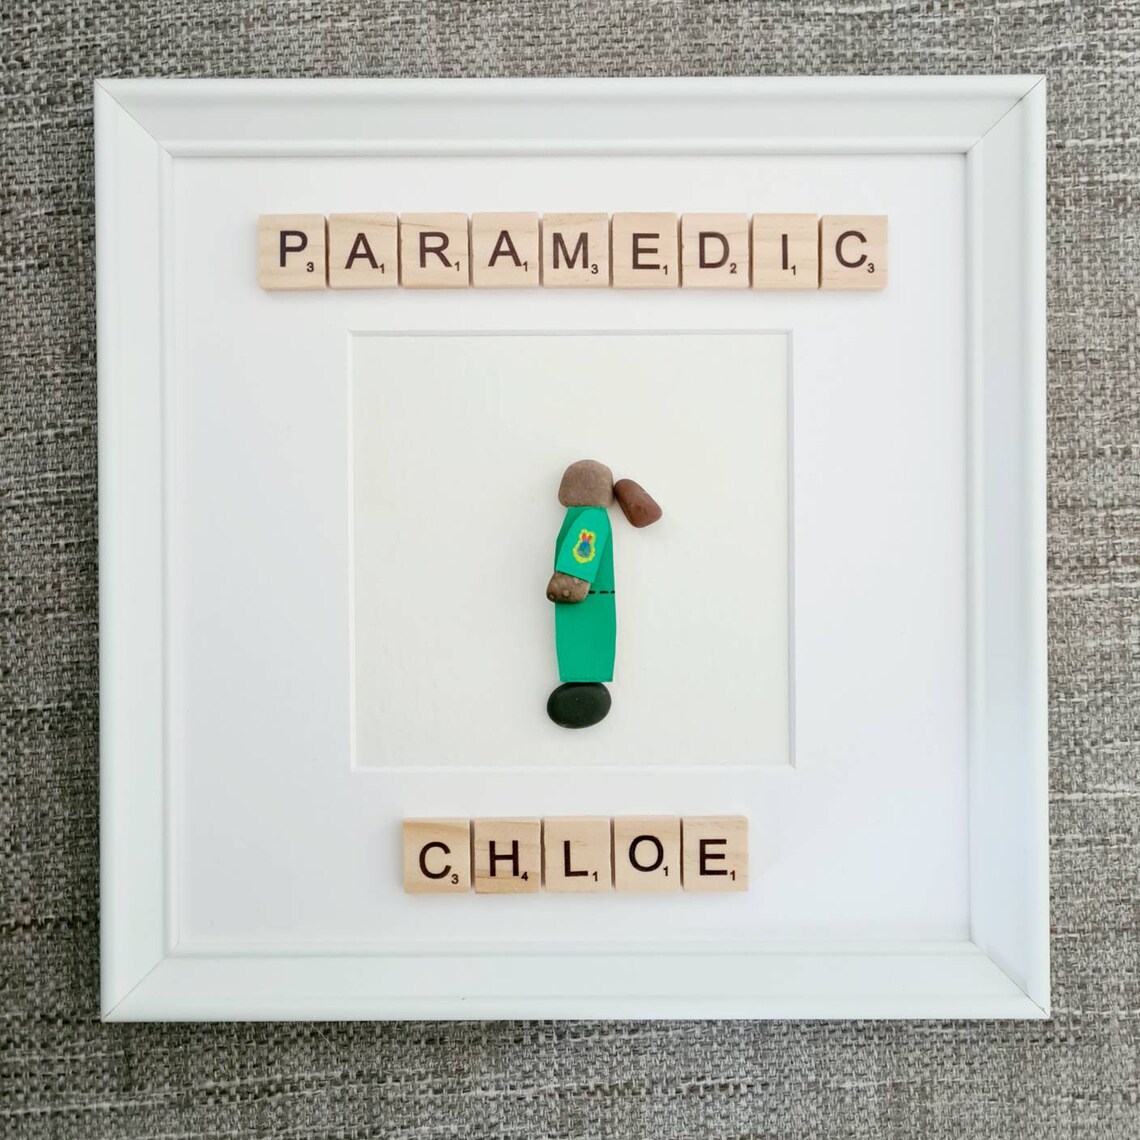 Paramedic gift. Gifts for paramedics. Gifts for paramedic. | Etsy